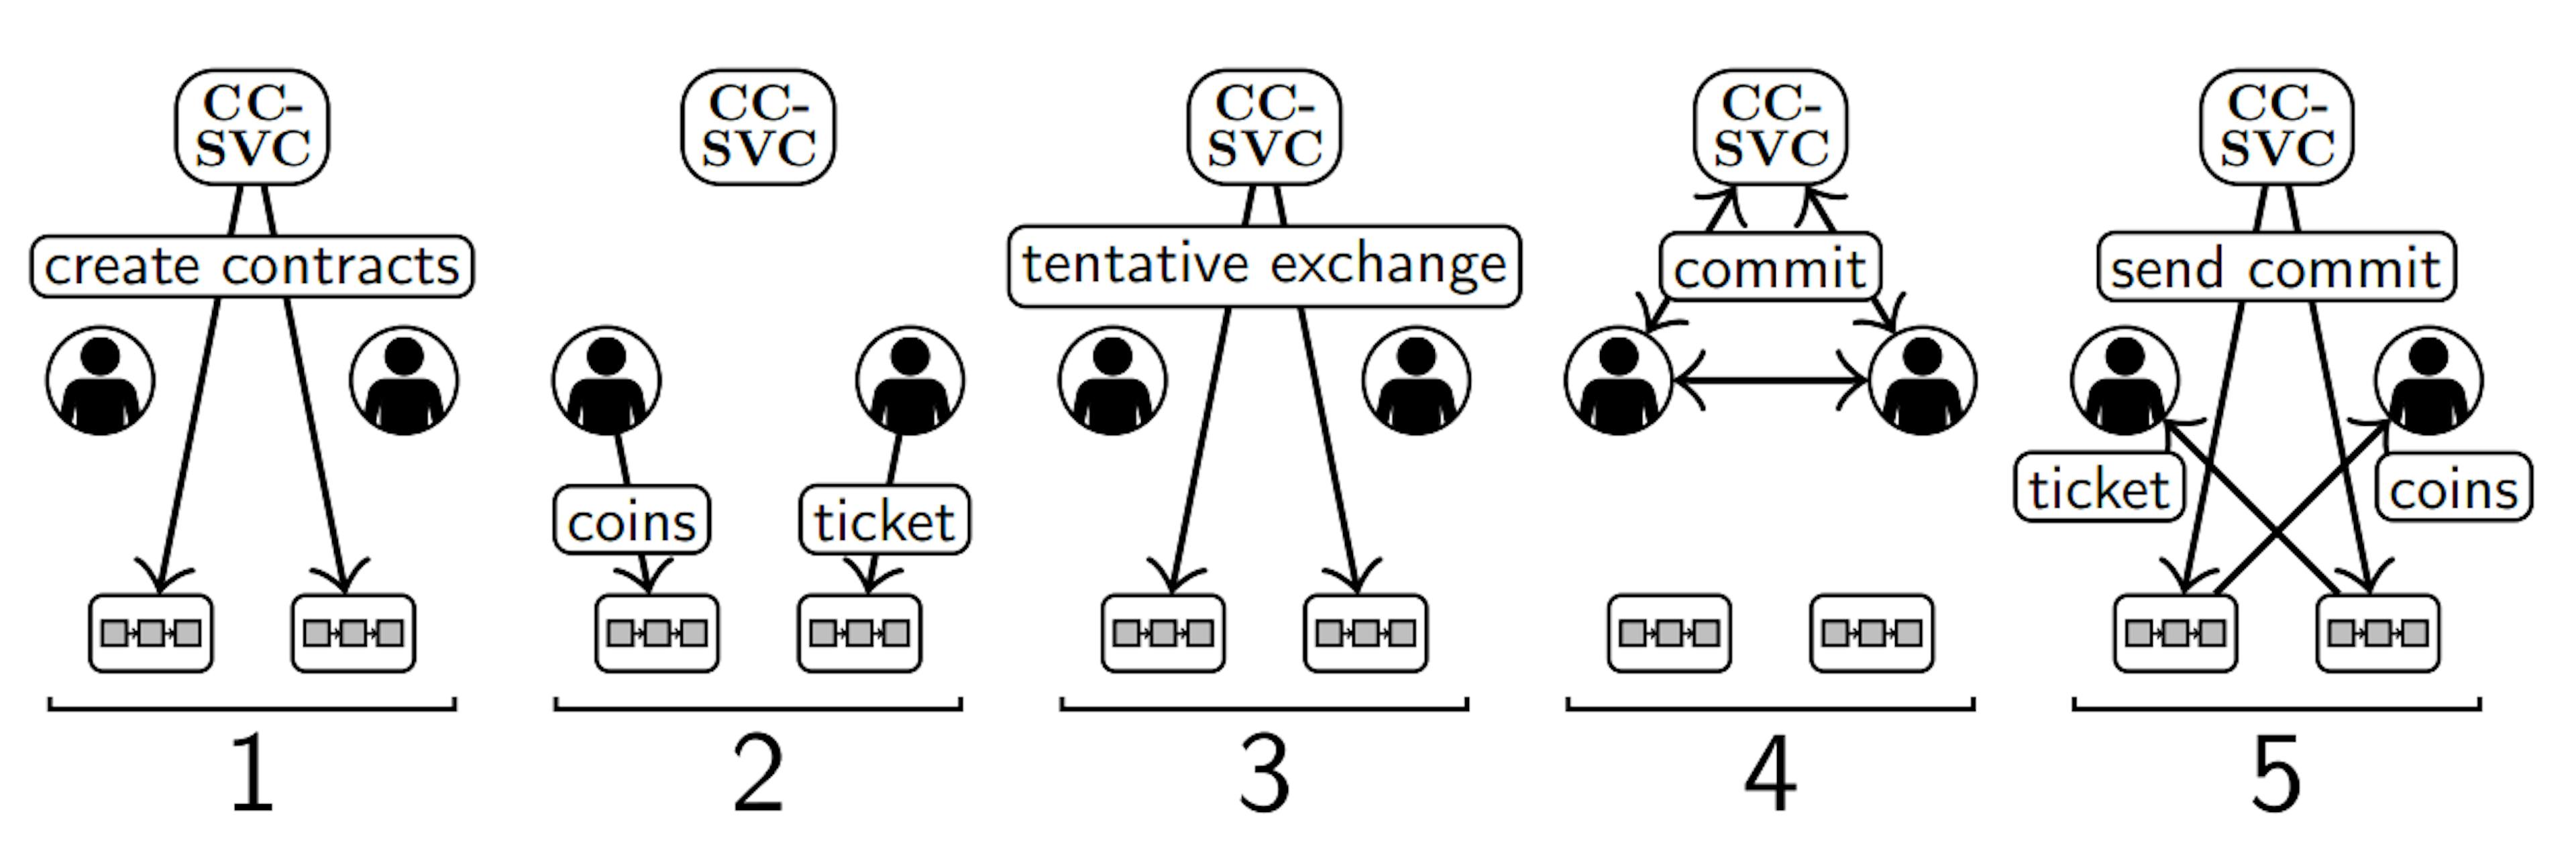 Hình 2. Minh họa năm bước của Phần II-B trong cài đặt có một CC-SVC (trên cùng), hai người dùng (giữa) và hai chuỗi khối (dưới cùng). Mạng Kafka không được hiển thị.